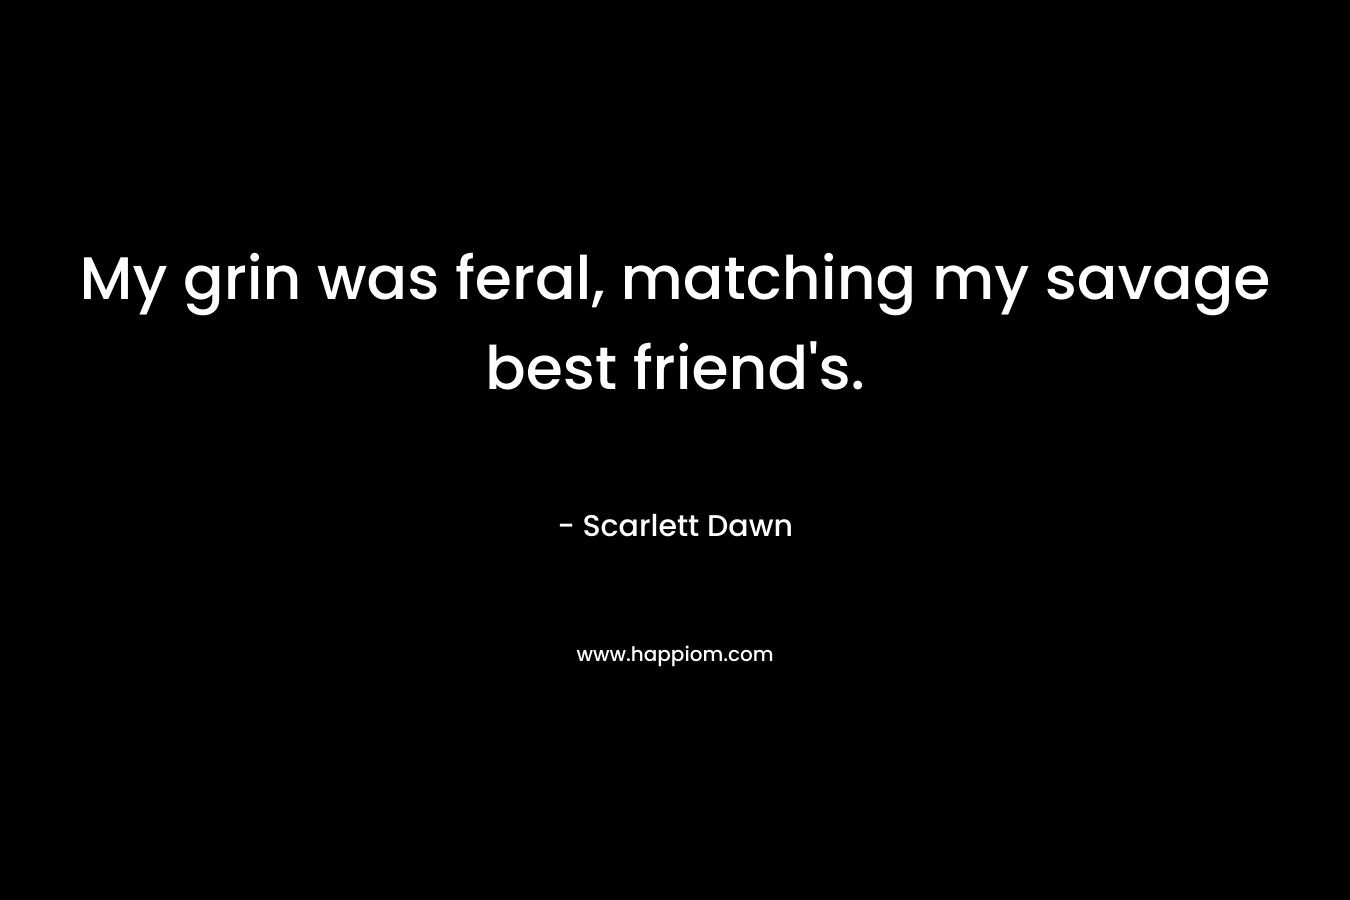 My grin was feral, matching my savage best friend’s. – Scarlett Dawn